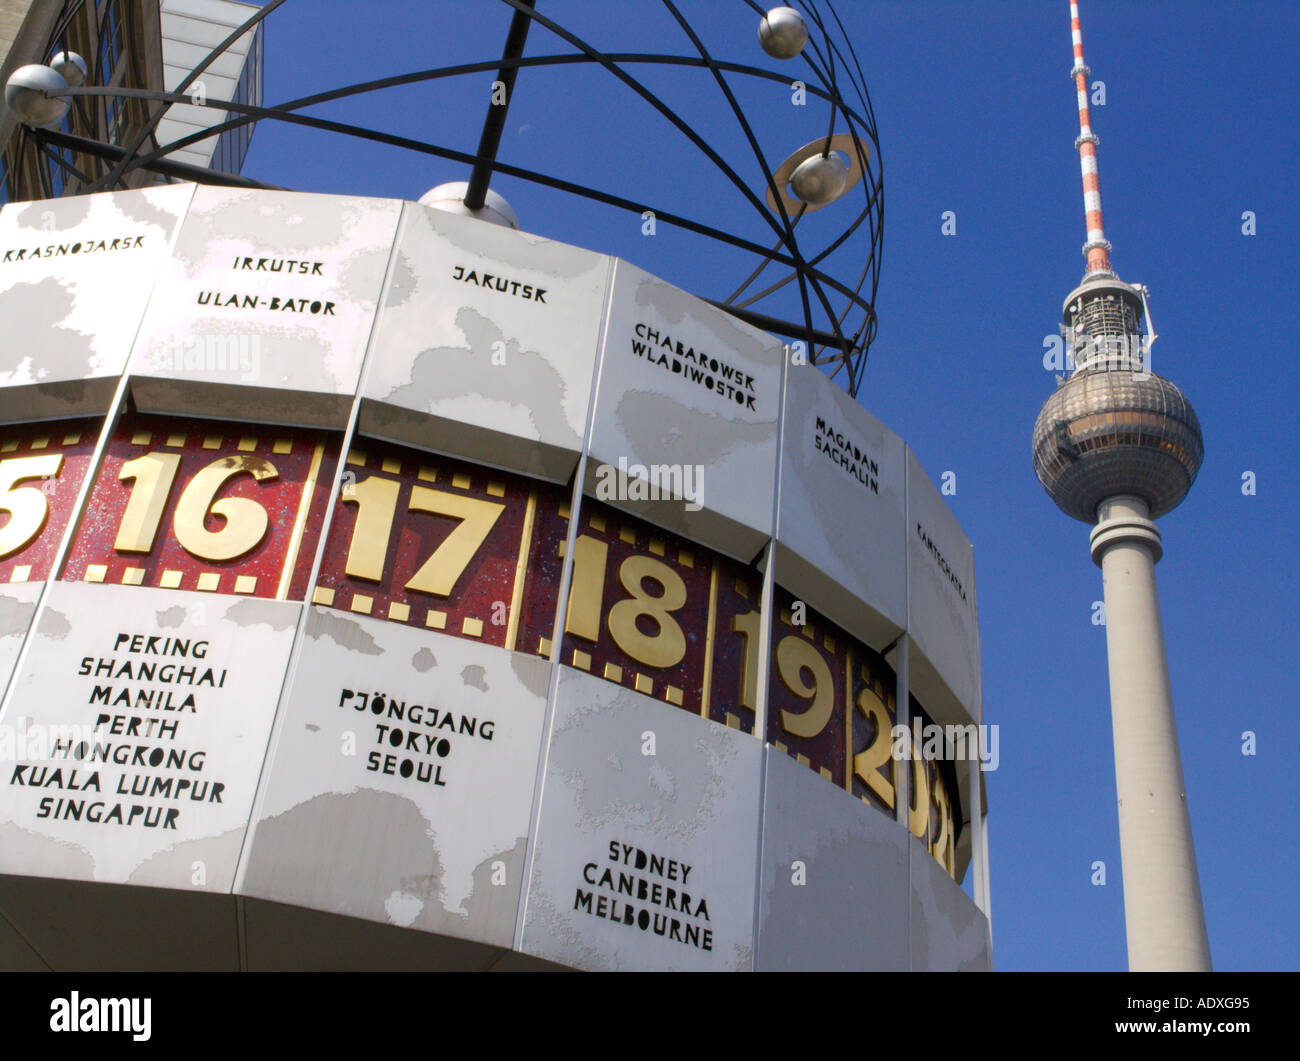 Le temps du monde de l'horloge et la tour de télévision de l'Alexanderplatz Mitte à Berlin Allemagne 2005 Banque D'Images